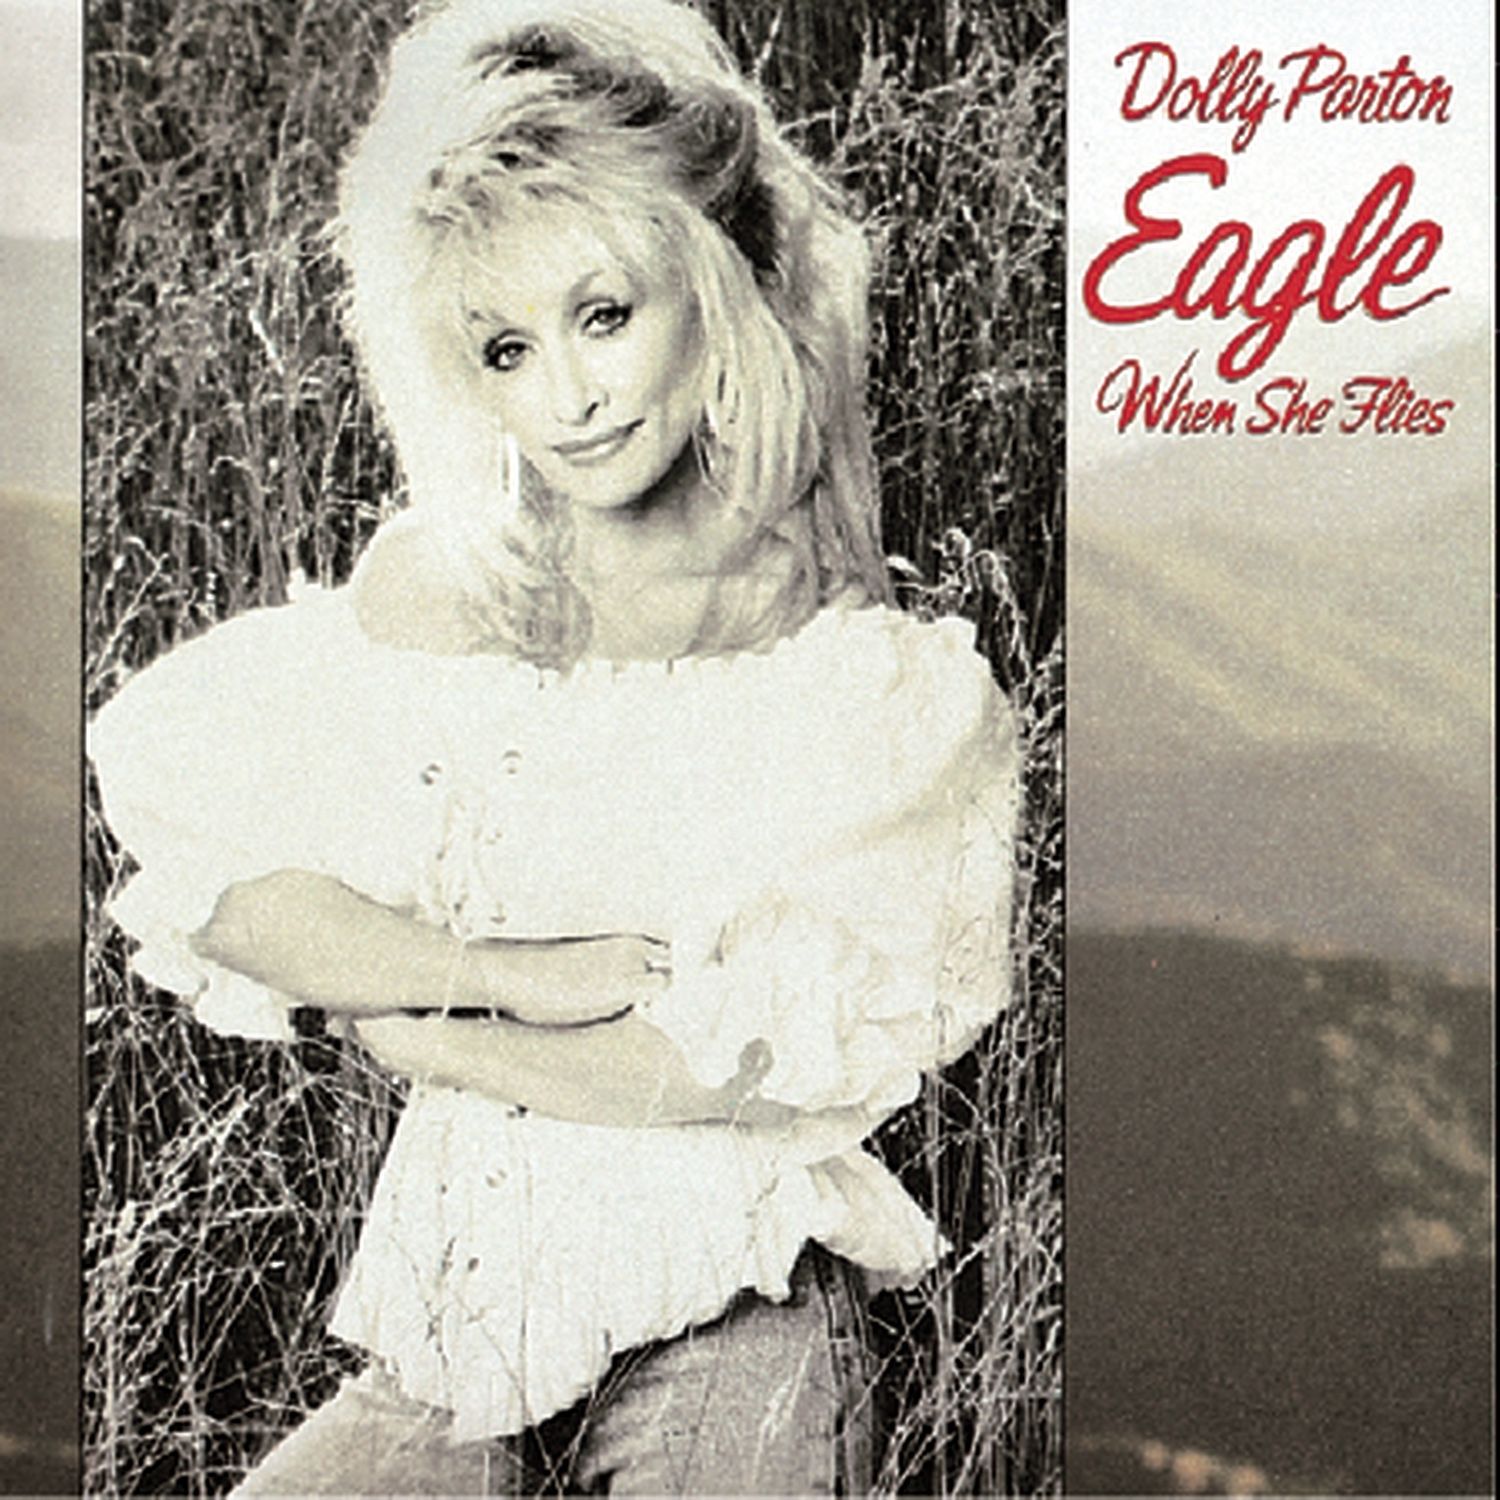 Dolly Parton - Eagle When She Flies Album Cover